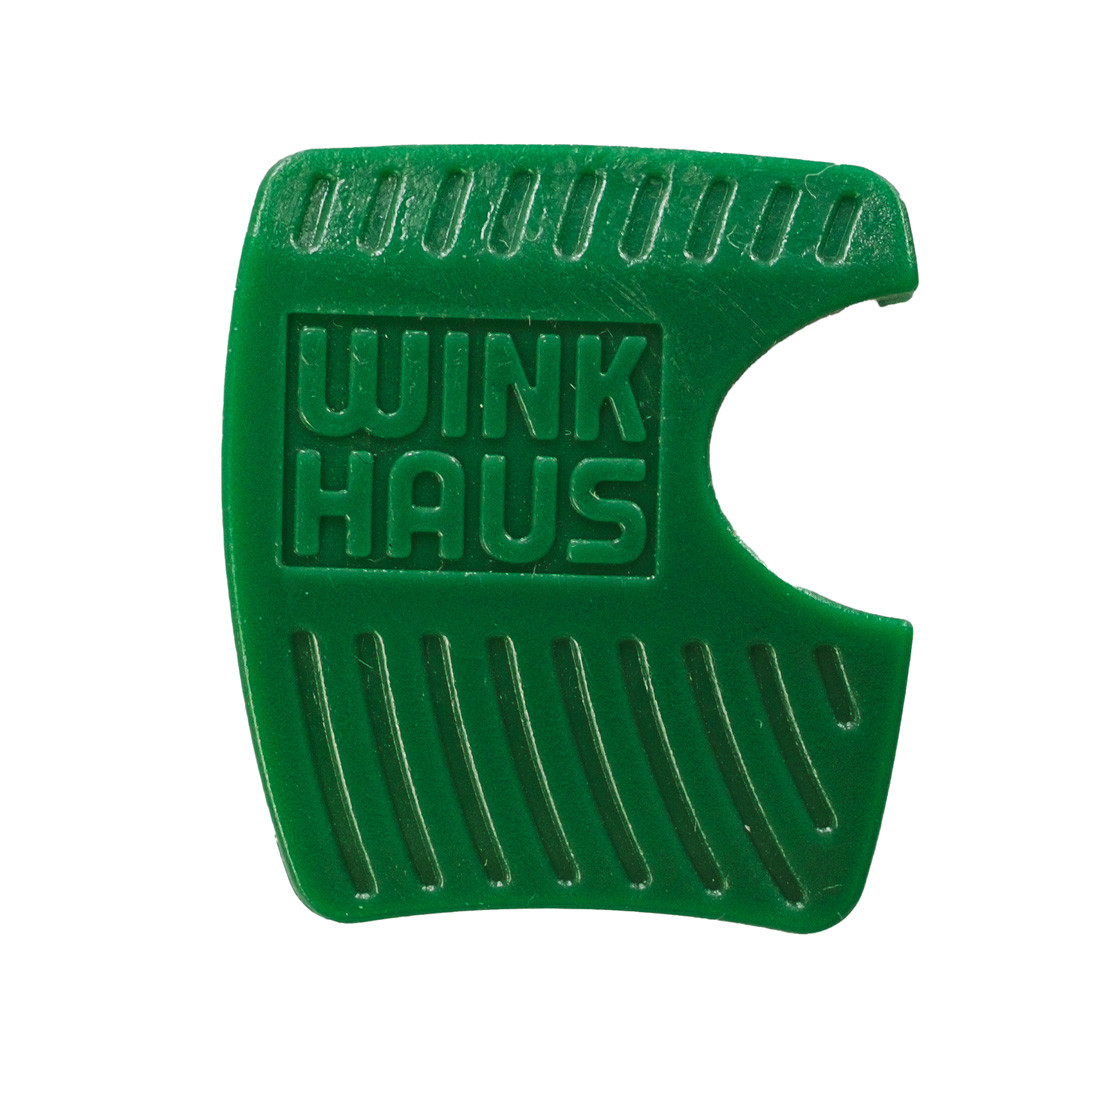 WINKHAUS RPE/RPS Farbkappen zum selber wechseln - Schlüsselringe/ Schlüsselkappen - Schlüsselzubehör - Sicherheitstechnik Shop